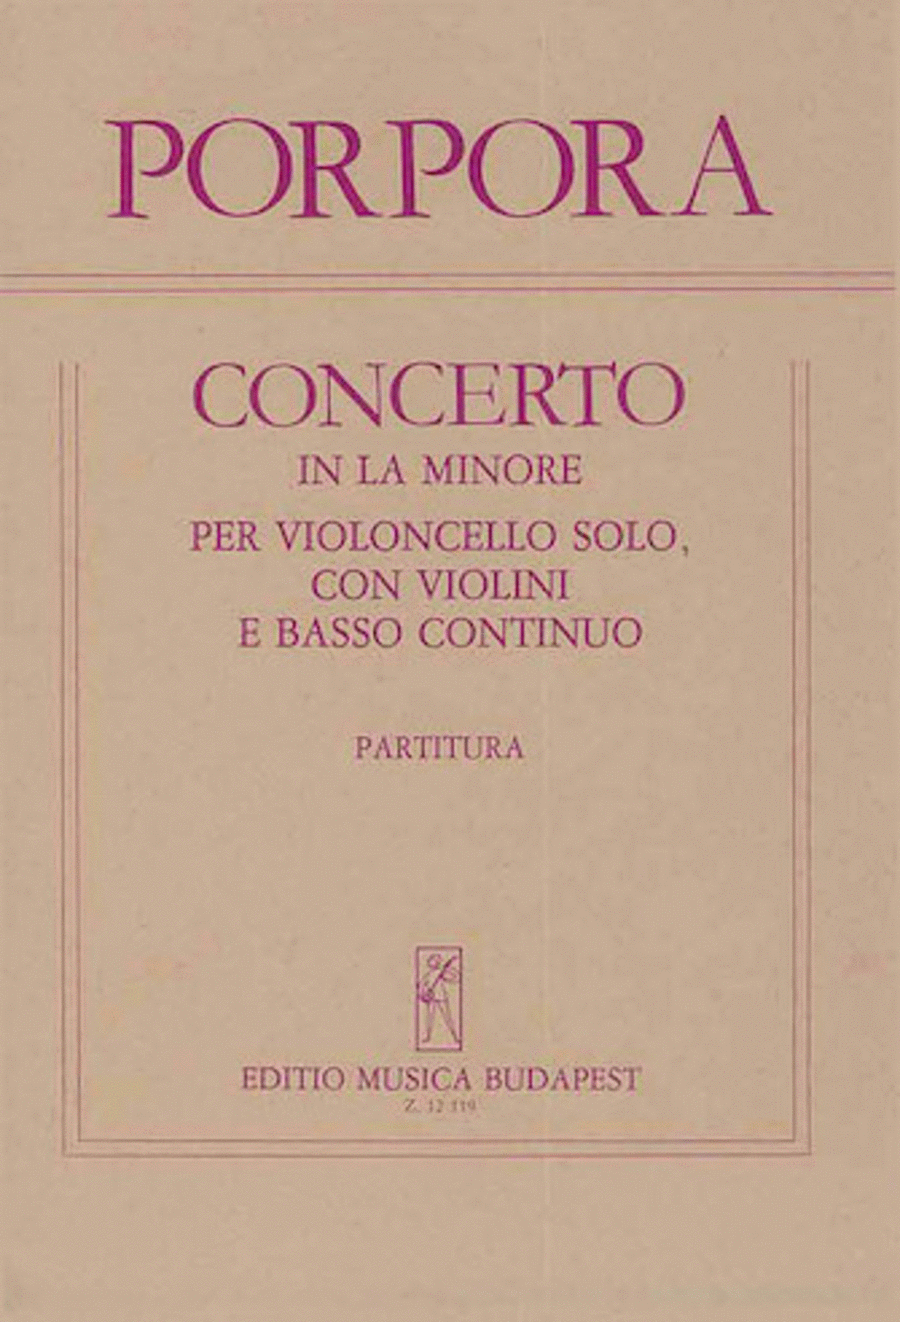 Concerto In La Minore